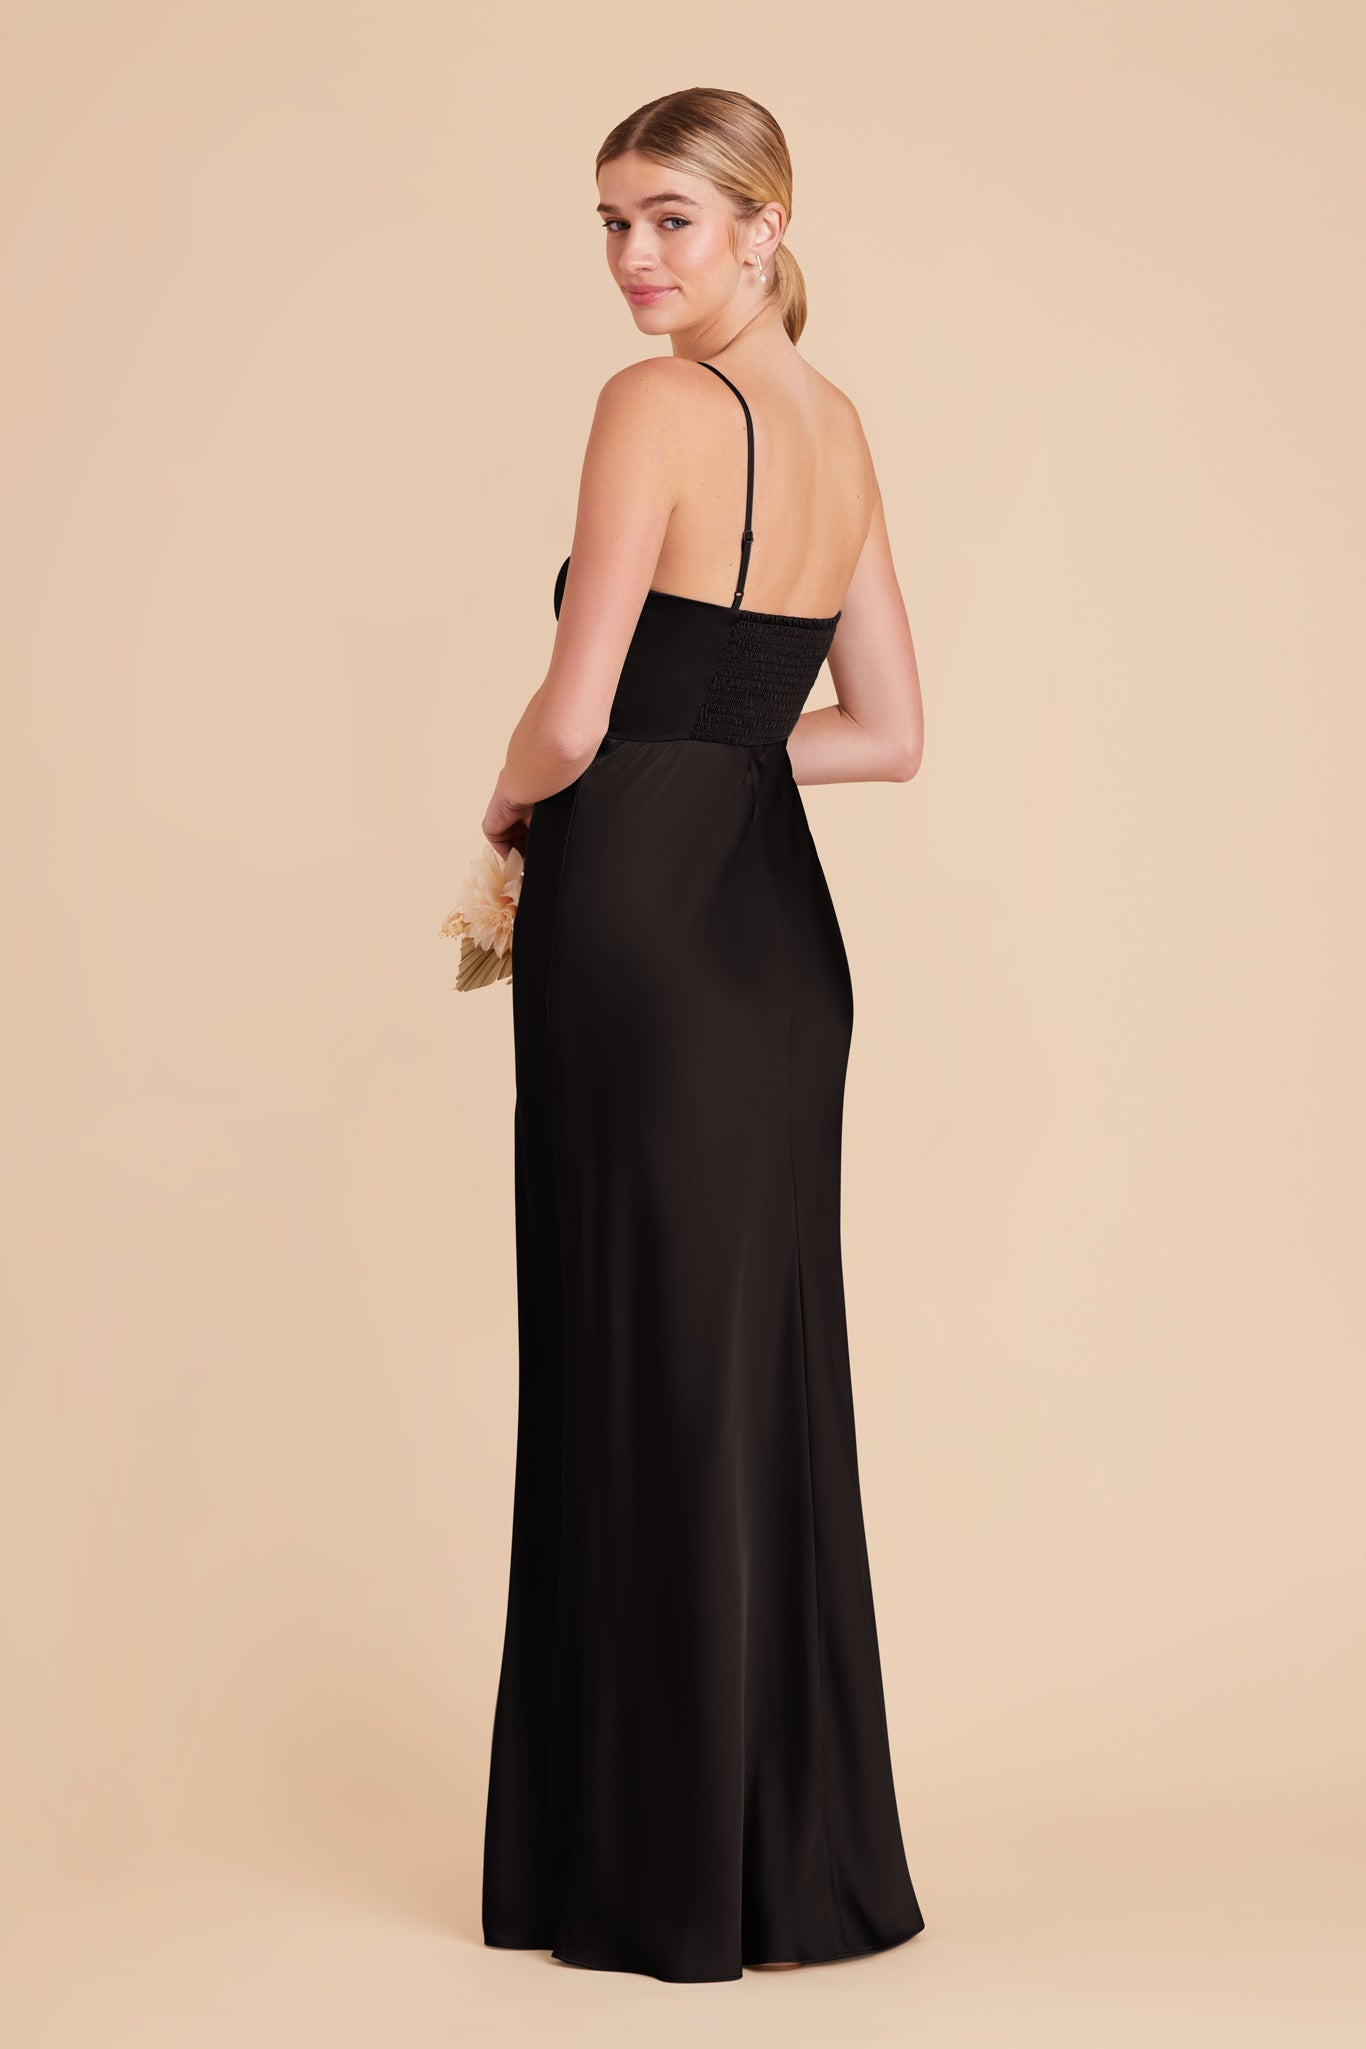 Black Jessica Matte Satin Dress by Birdy Grey